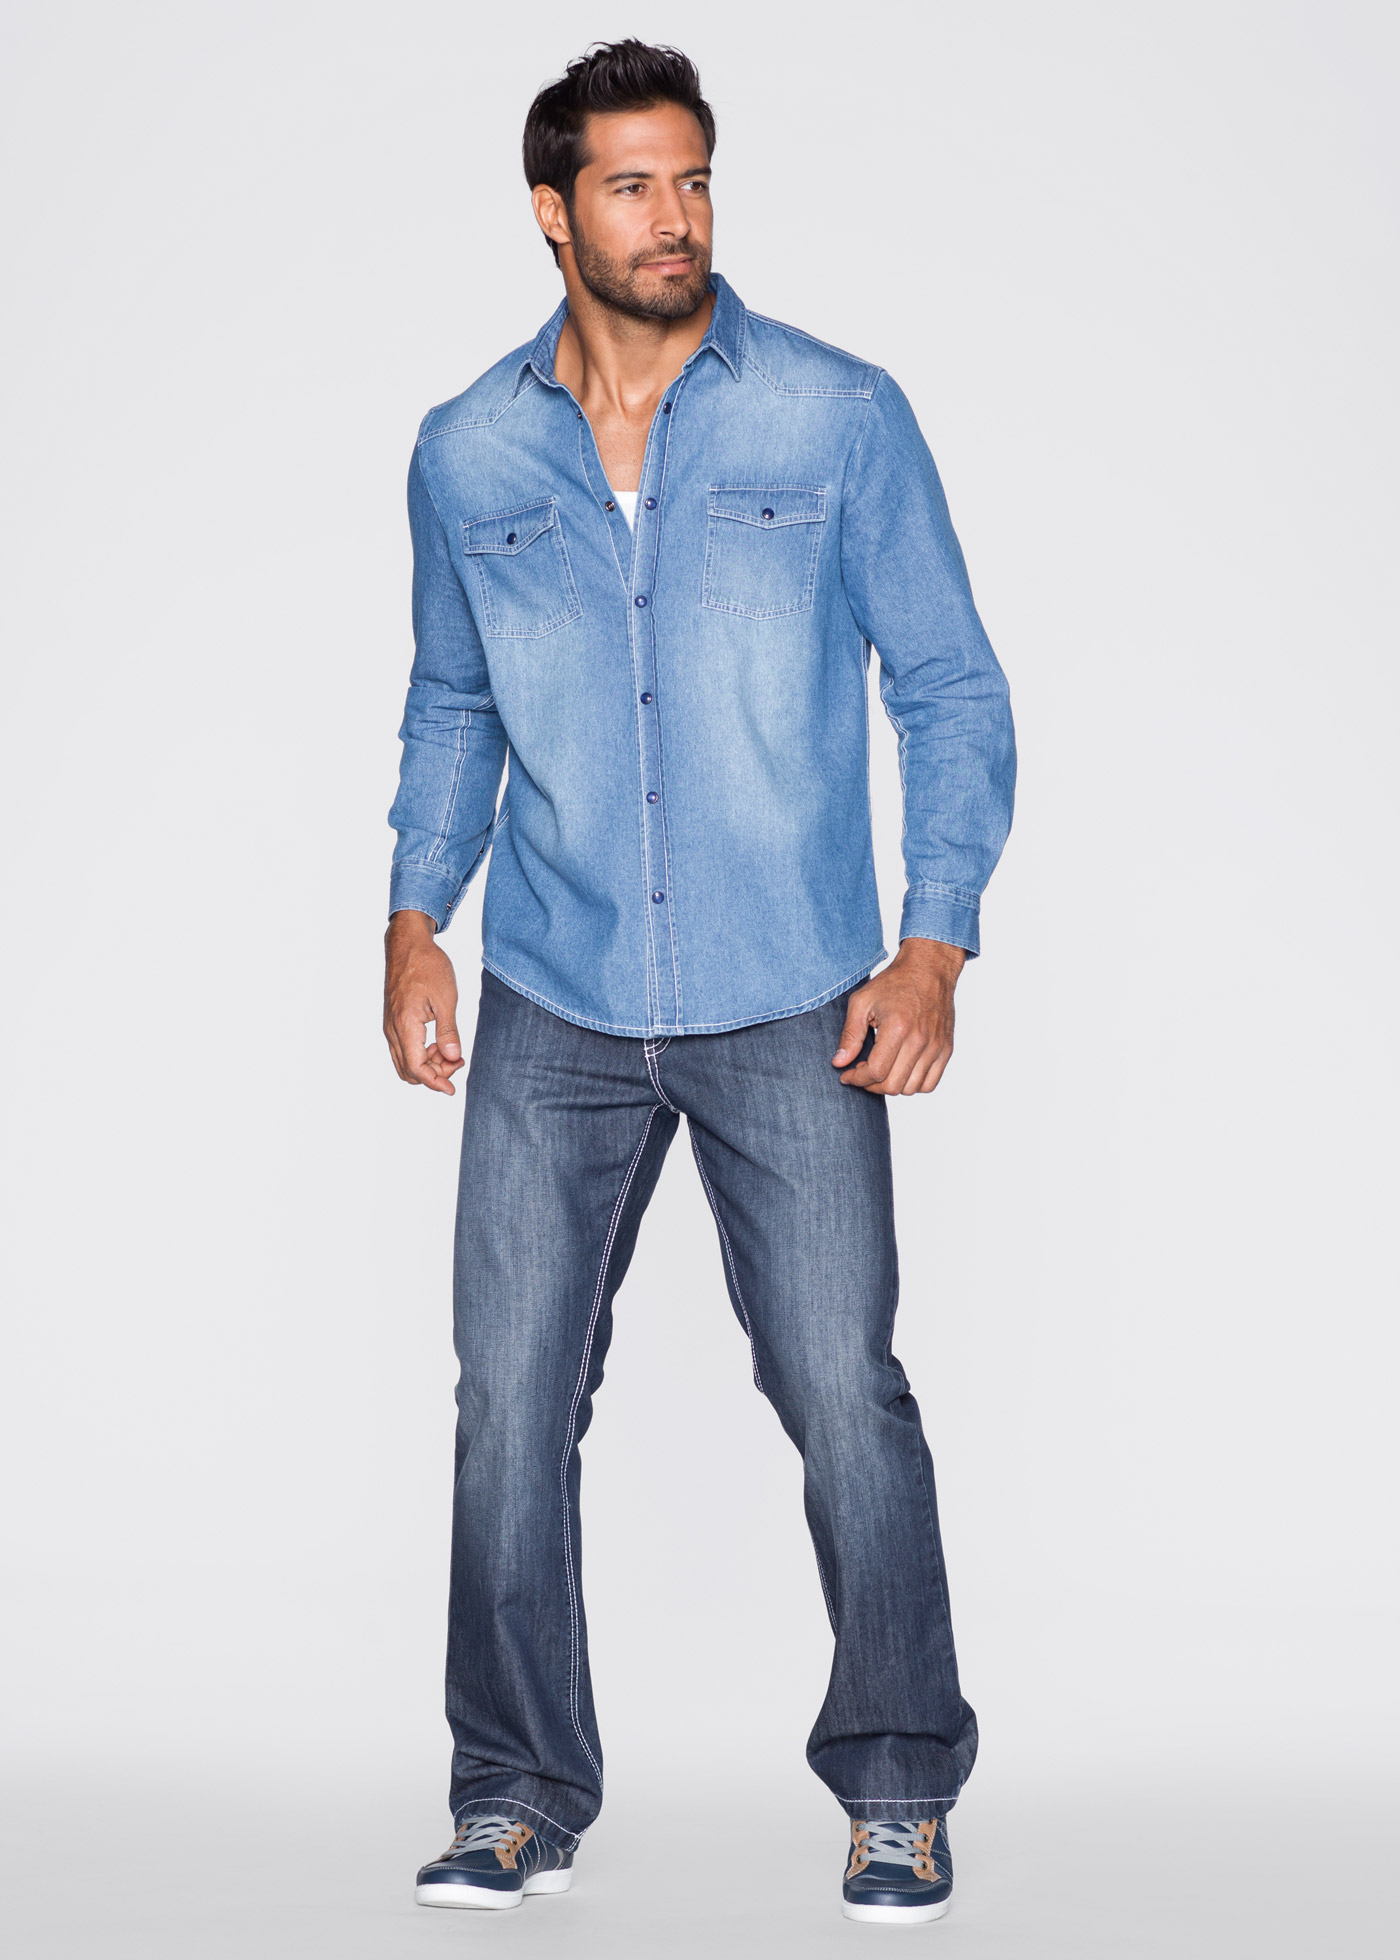 Jeansskjorta, normal passform, John Baner JEANSWEAR, blue bleached used